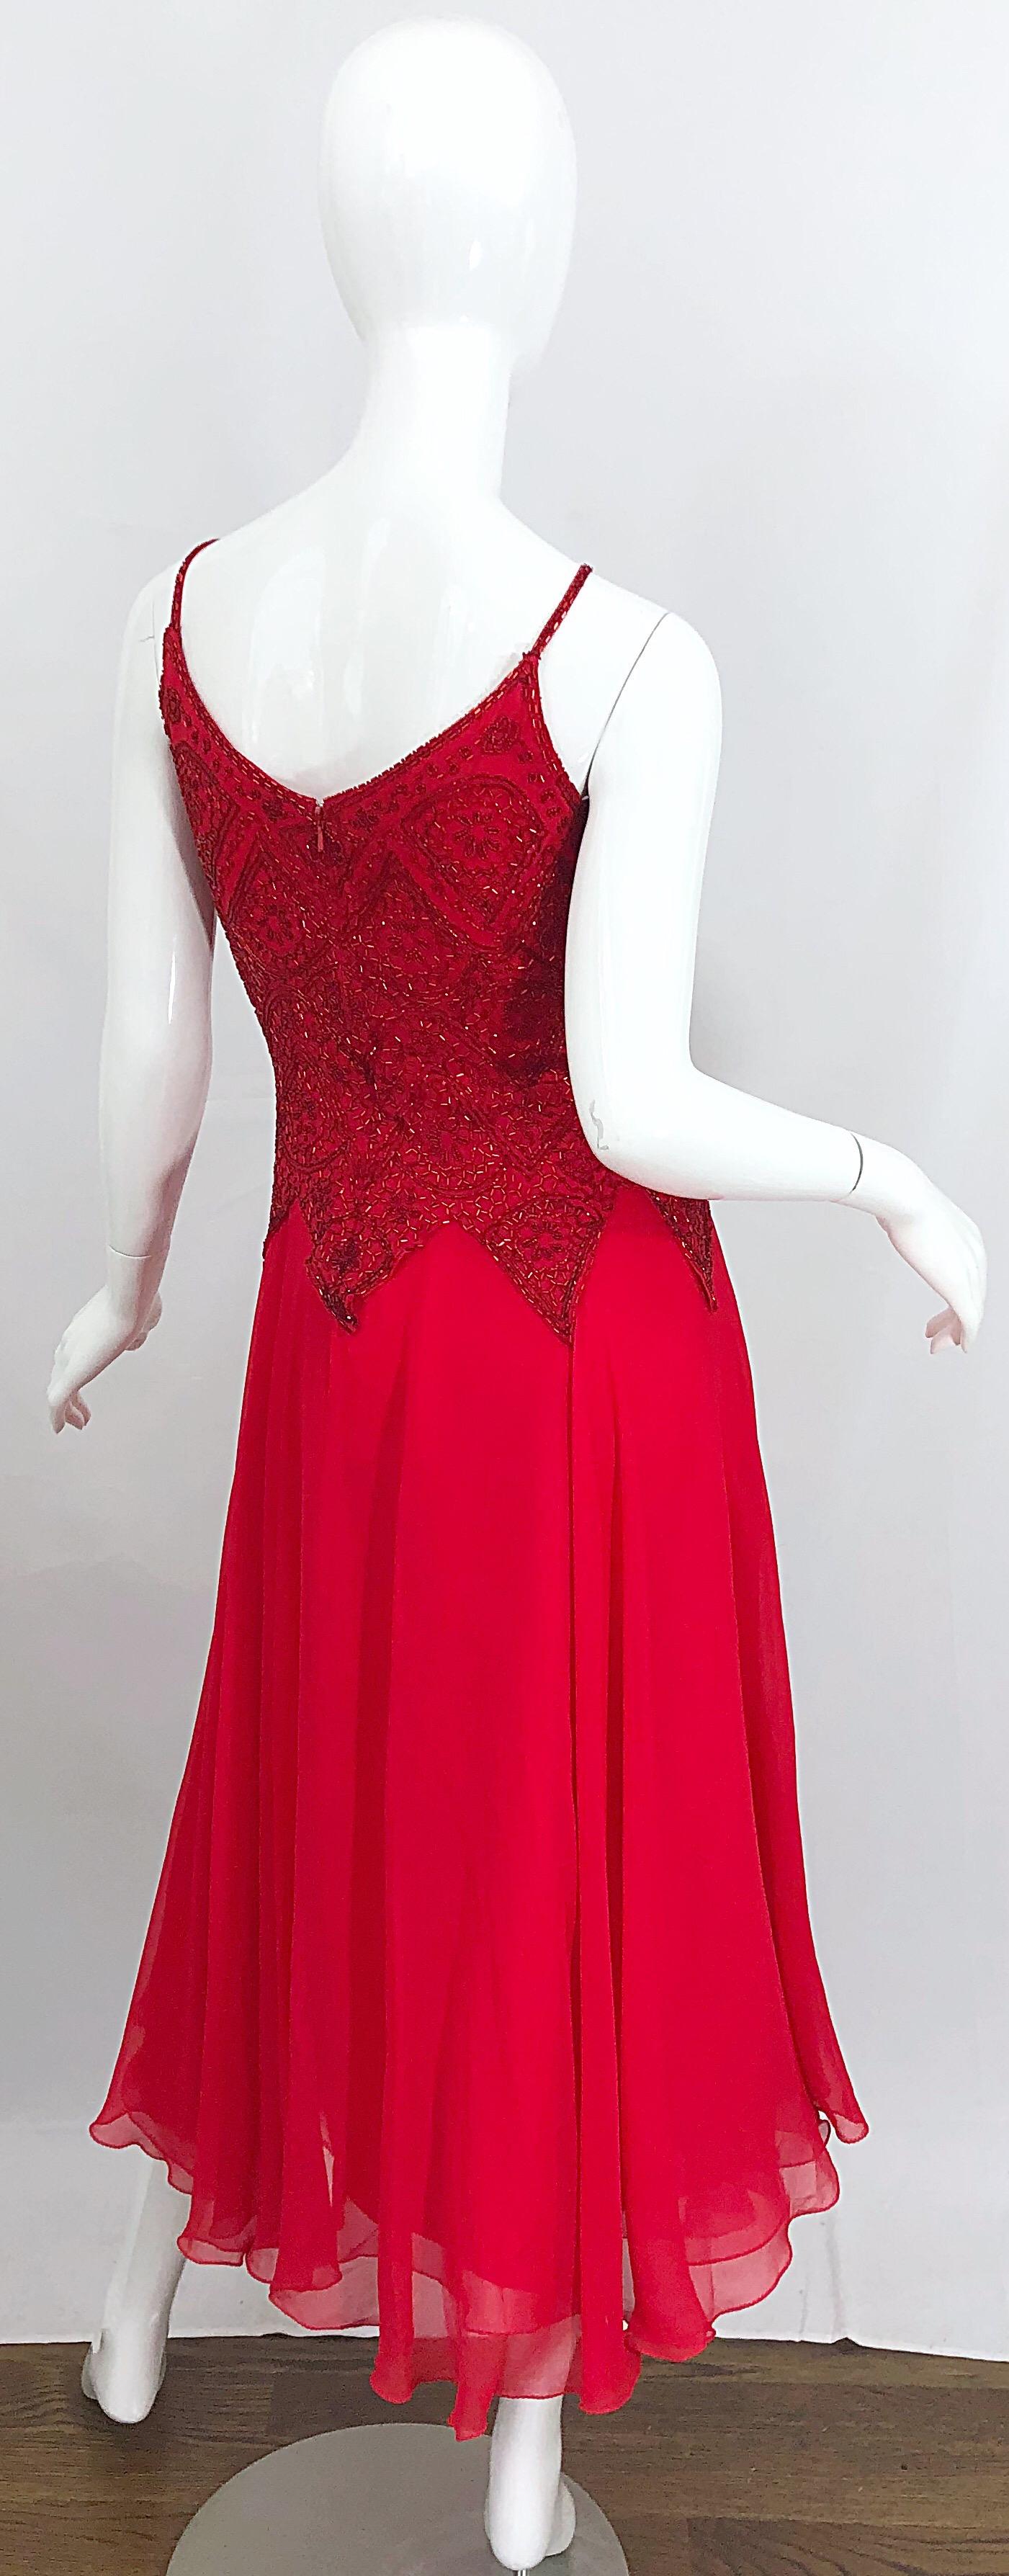 red silk chiffon dress